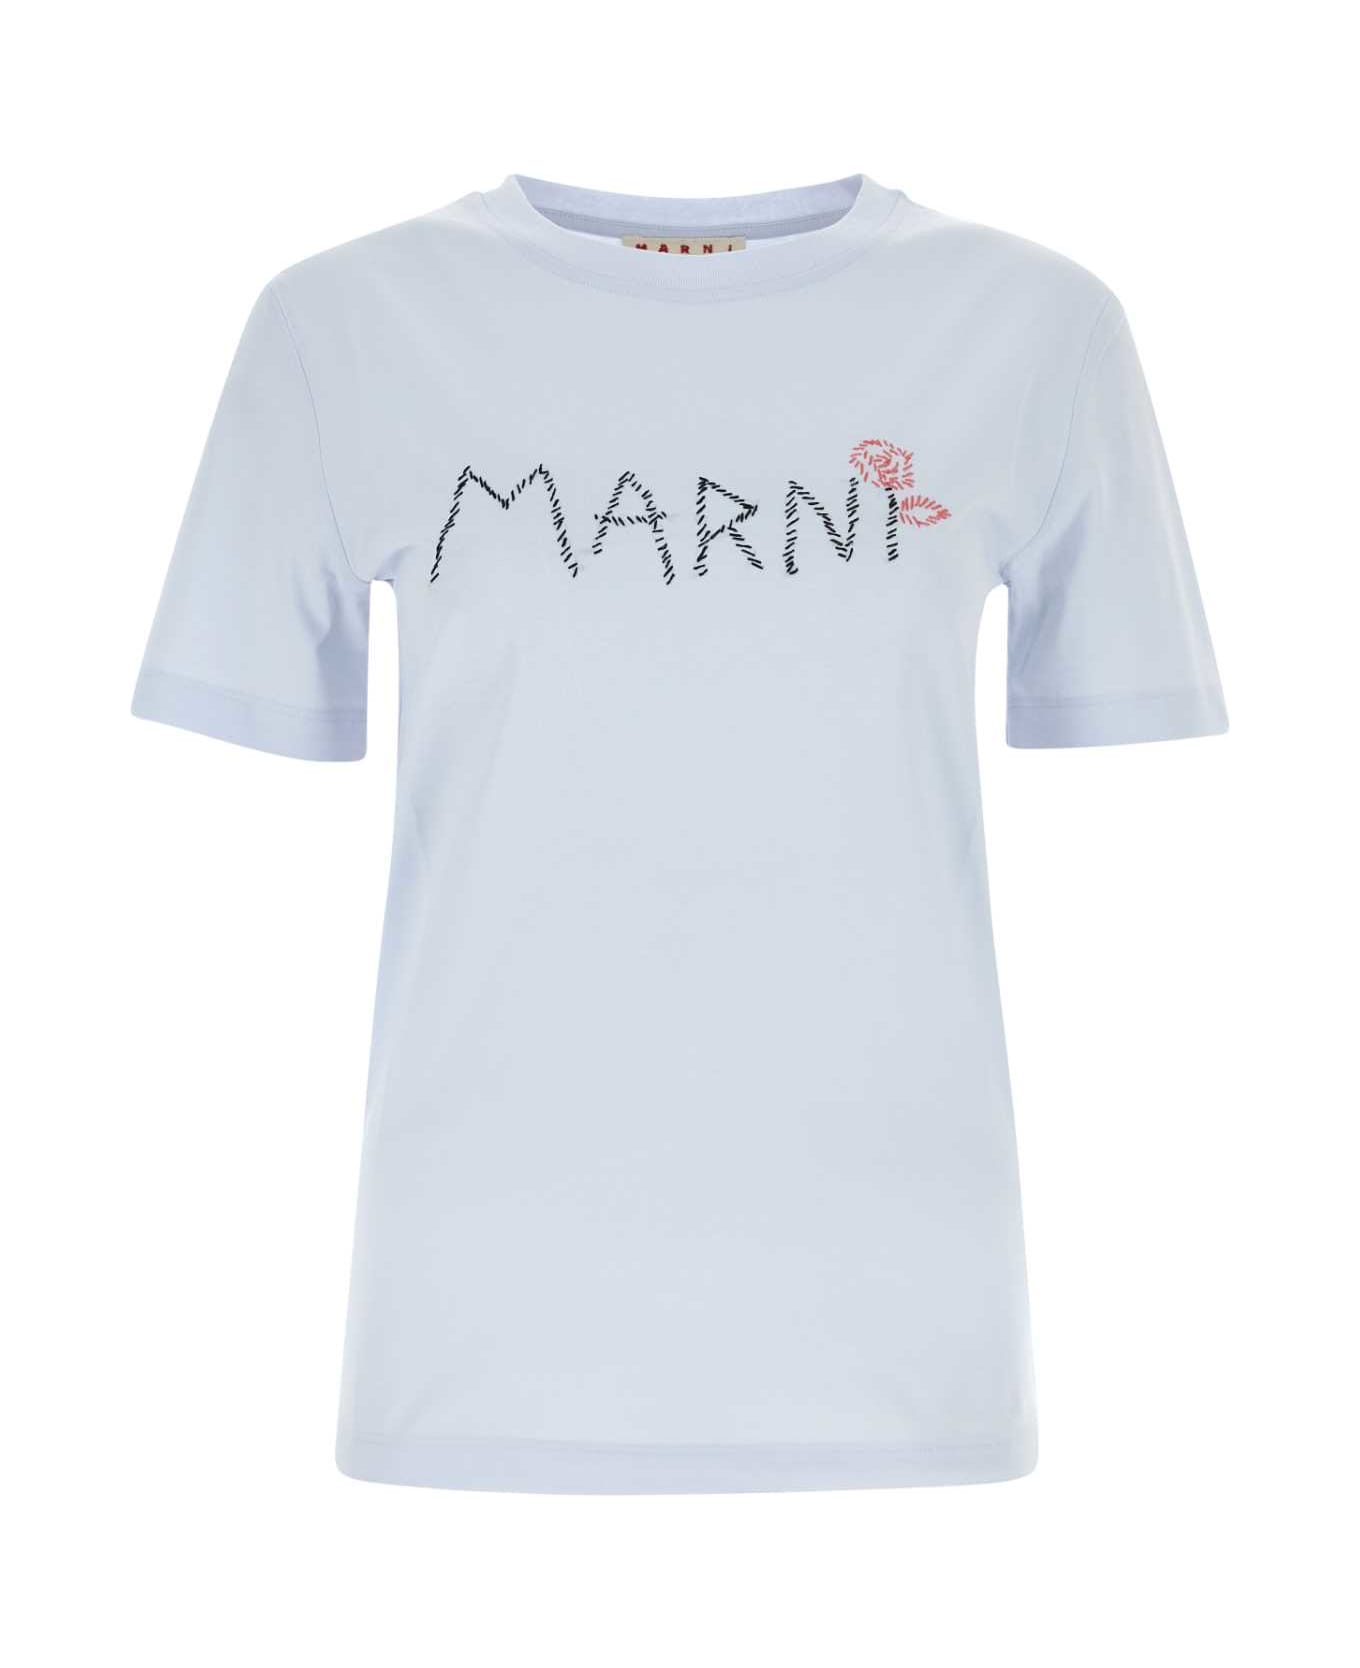 Marni Light Blue T-shirt With Marni Stitching - 00B21 Tシャツ